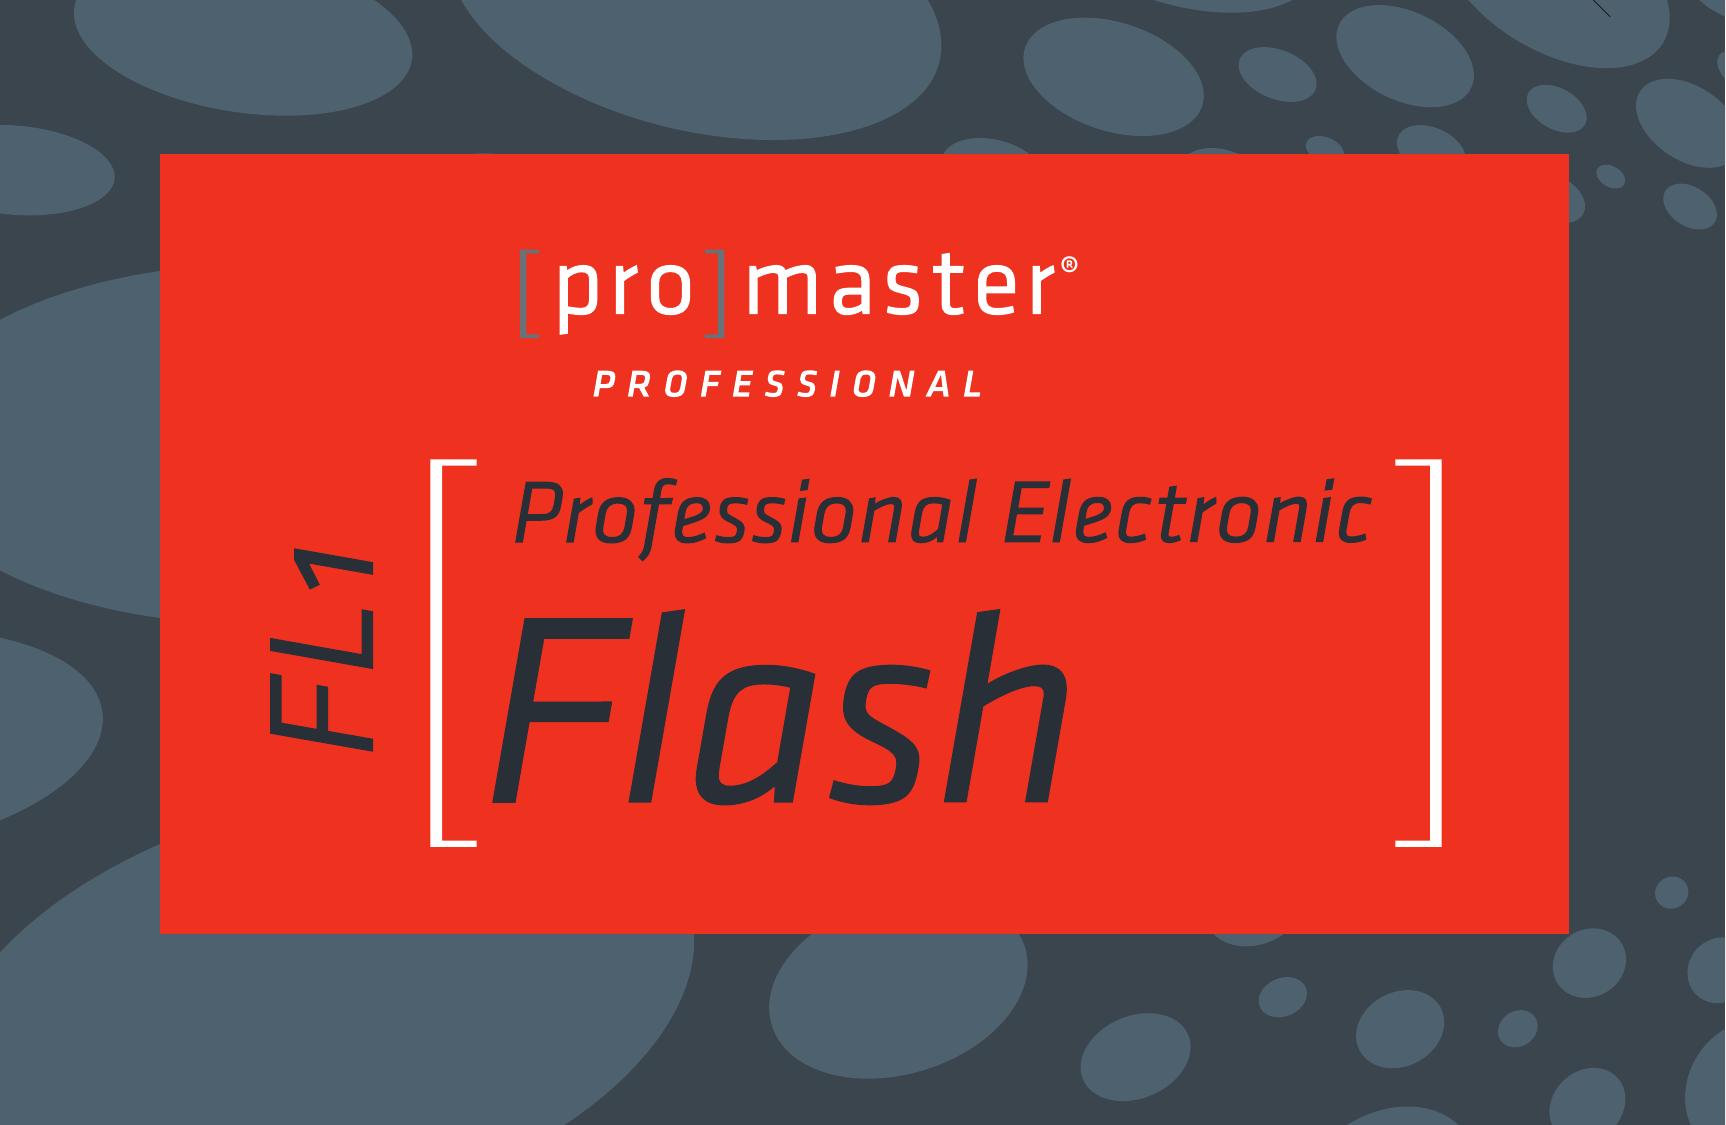 ProMaster FL1 Pro (Canon) Camera Accessories User Manual